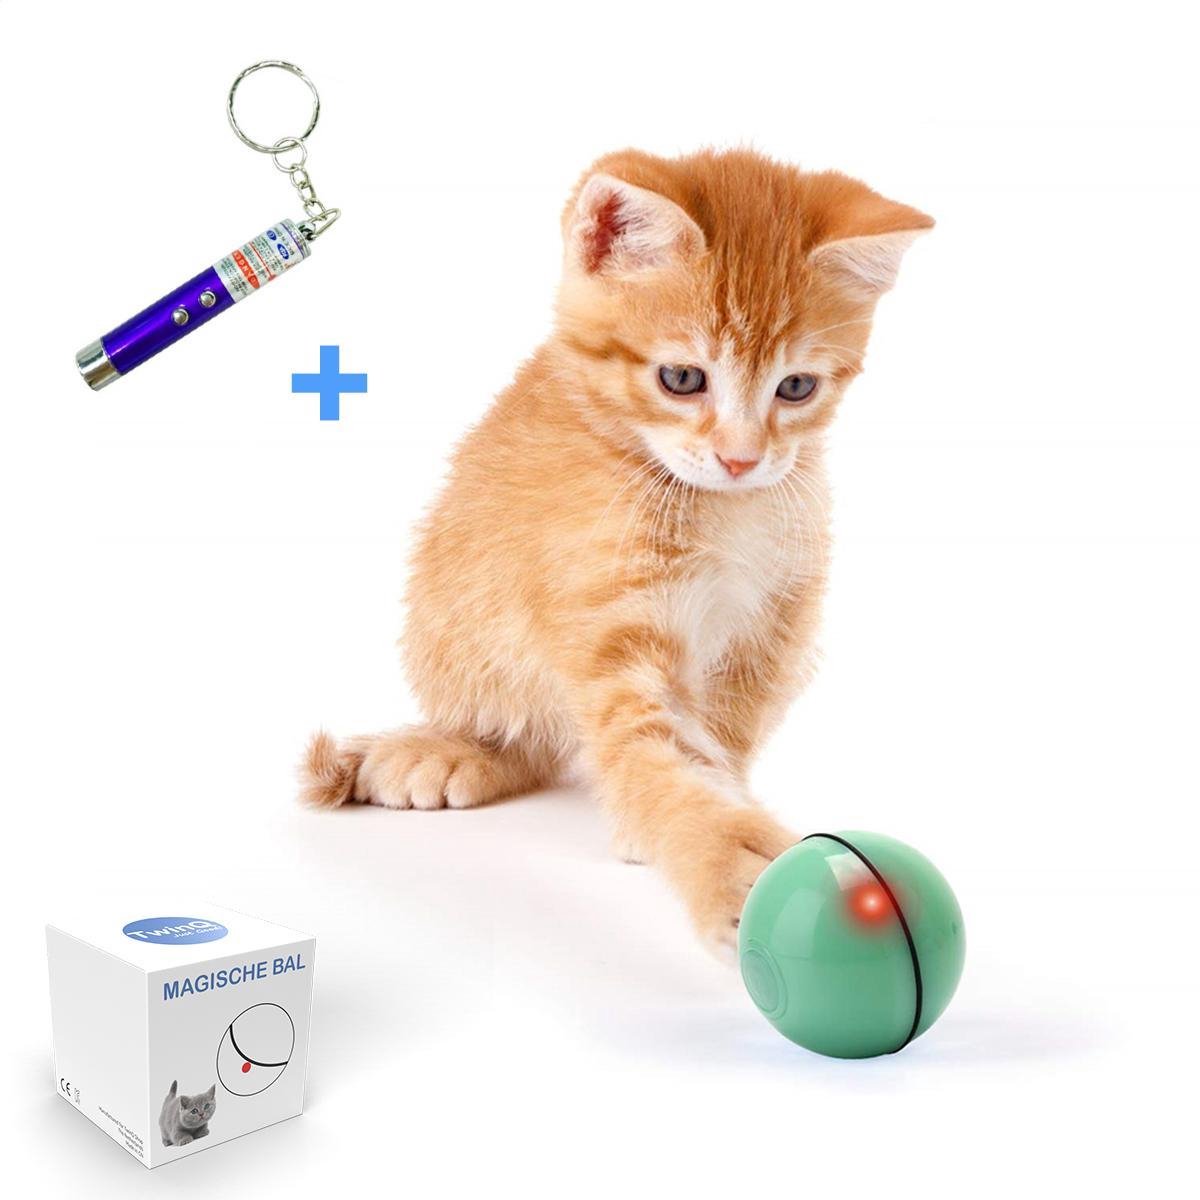 TwinQ Magische Bal Interactief Speelgoed Hond/Kat - Speelgoed Voor Dieren - USB oplaadbaar - Groen - TwinQ